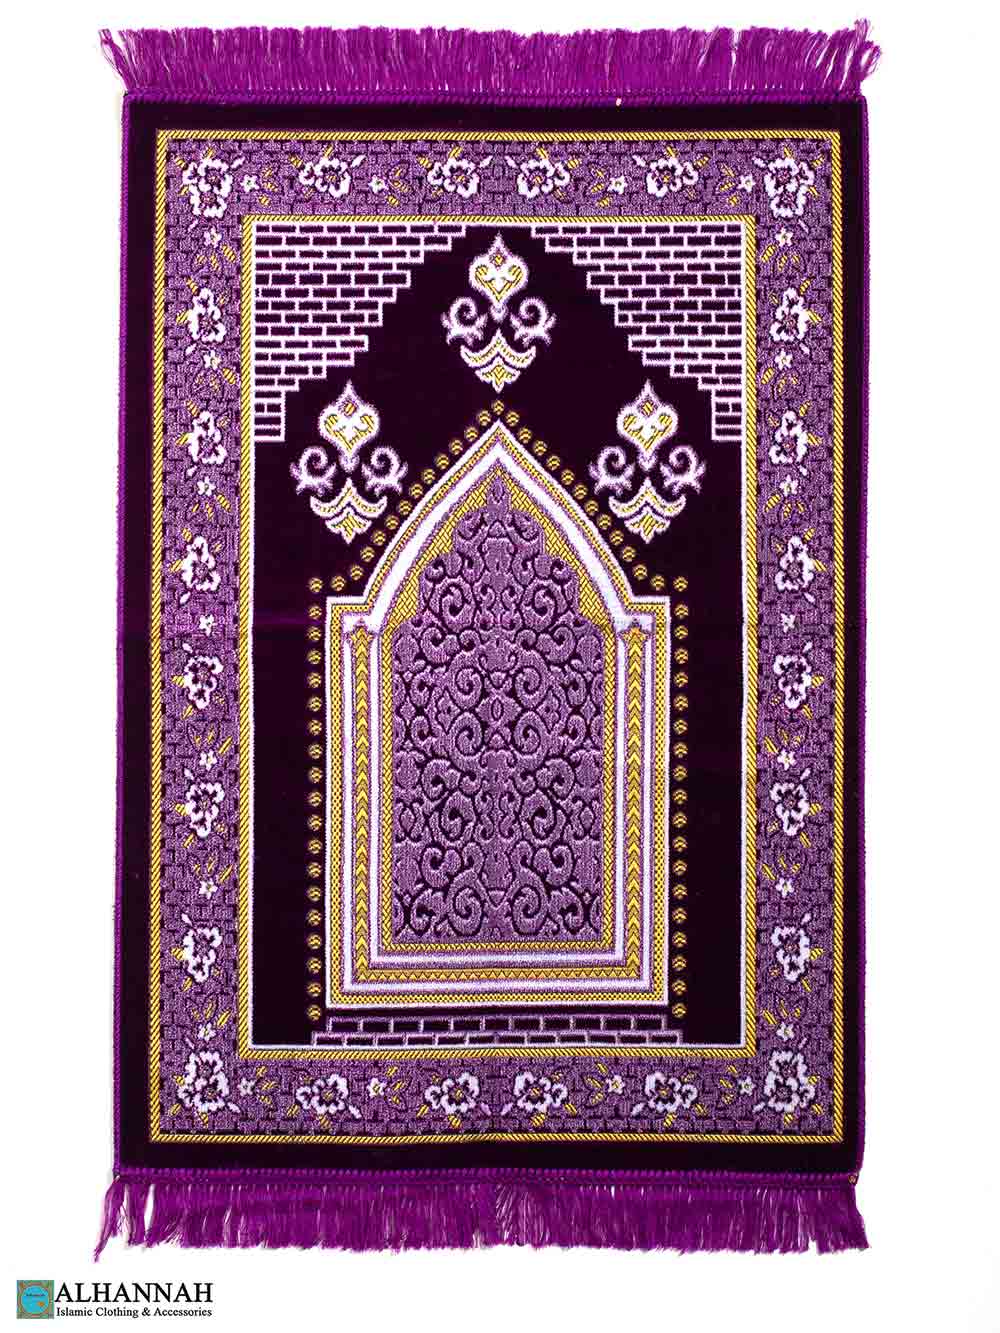 Turkish Prayer Rug – Floral Border in Violet